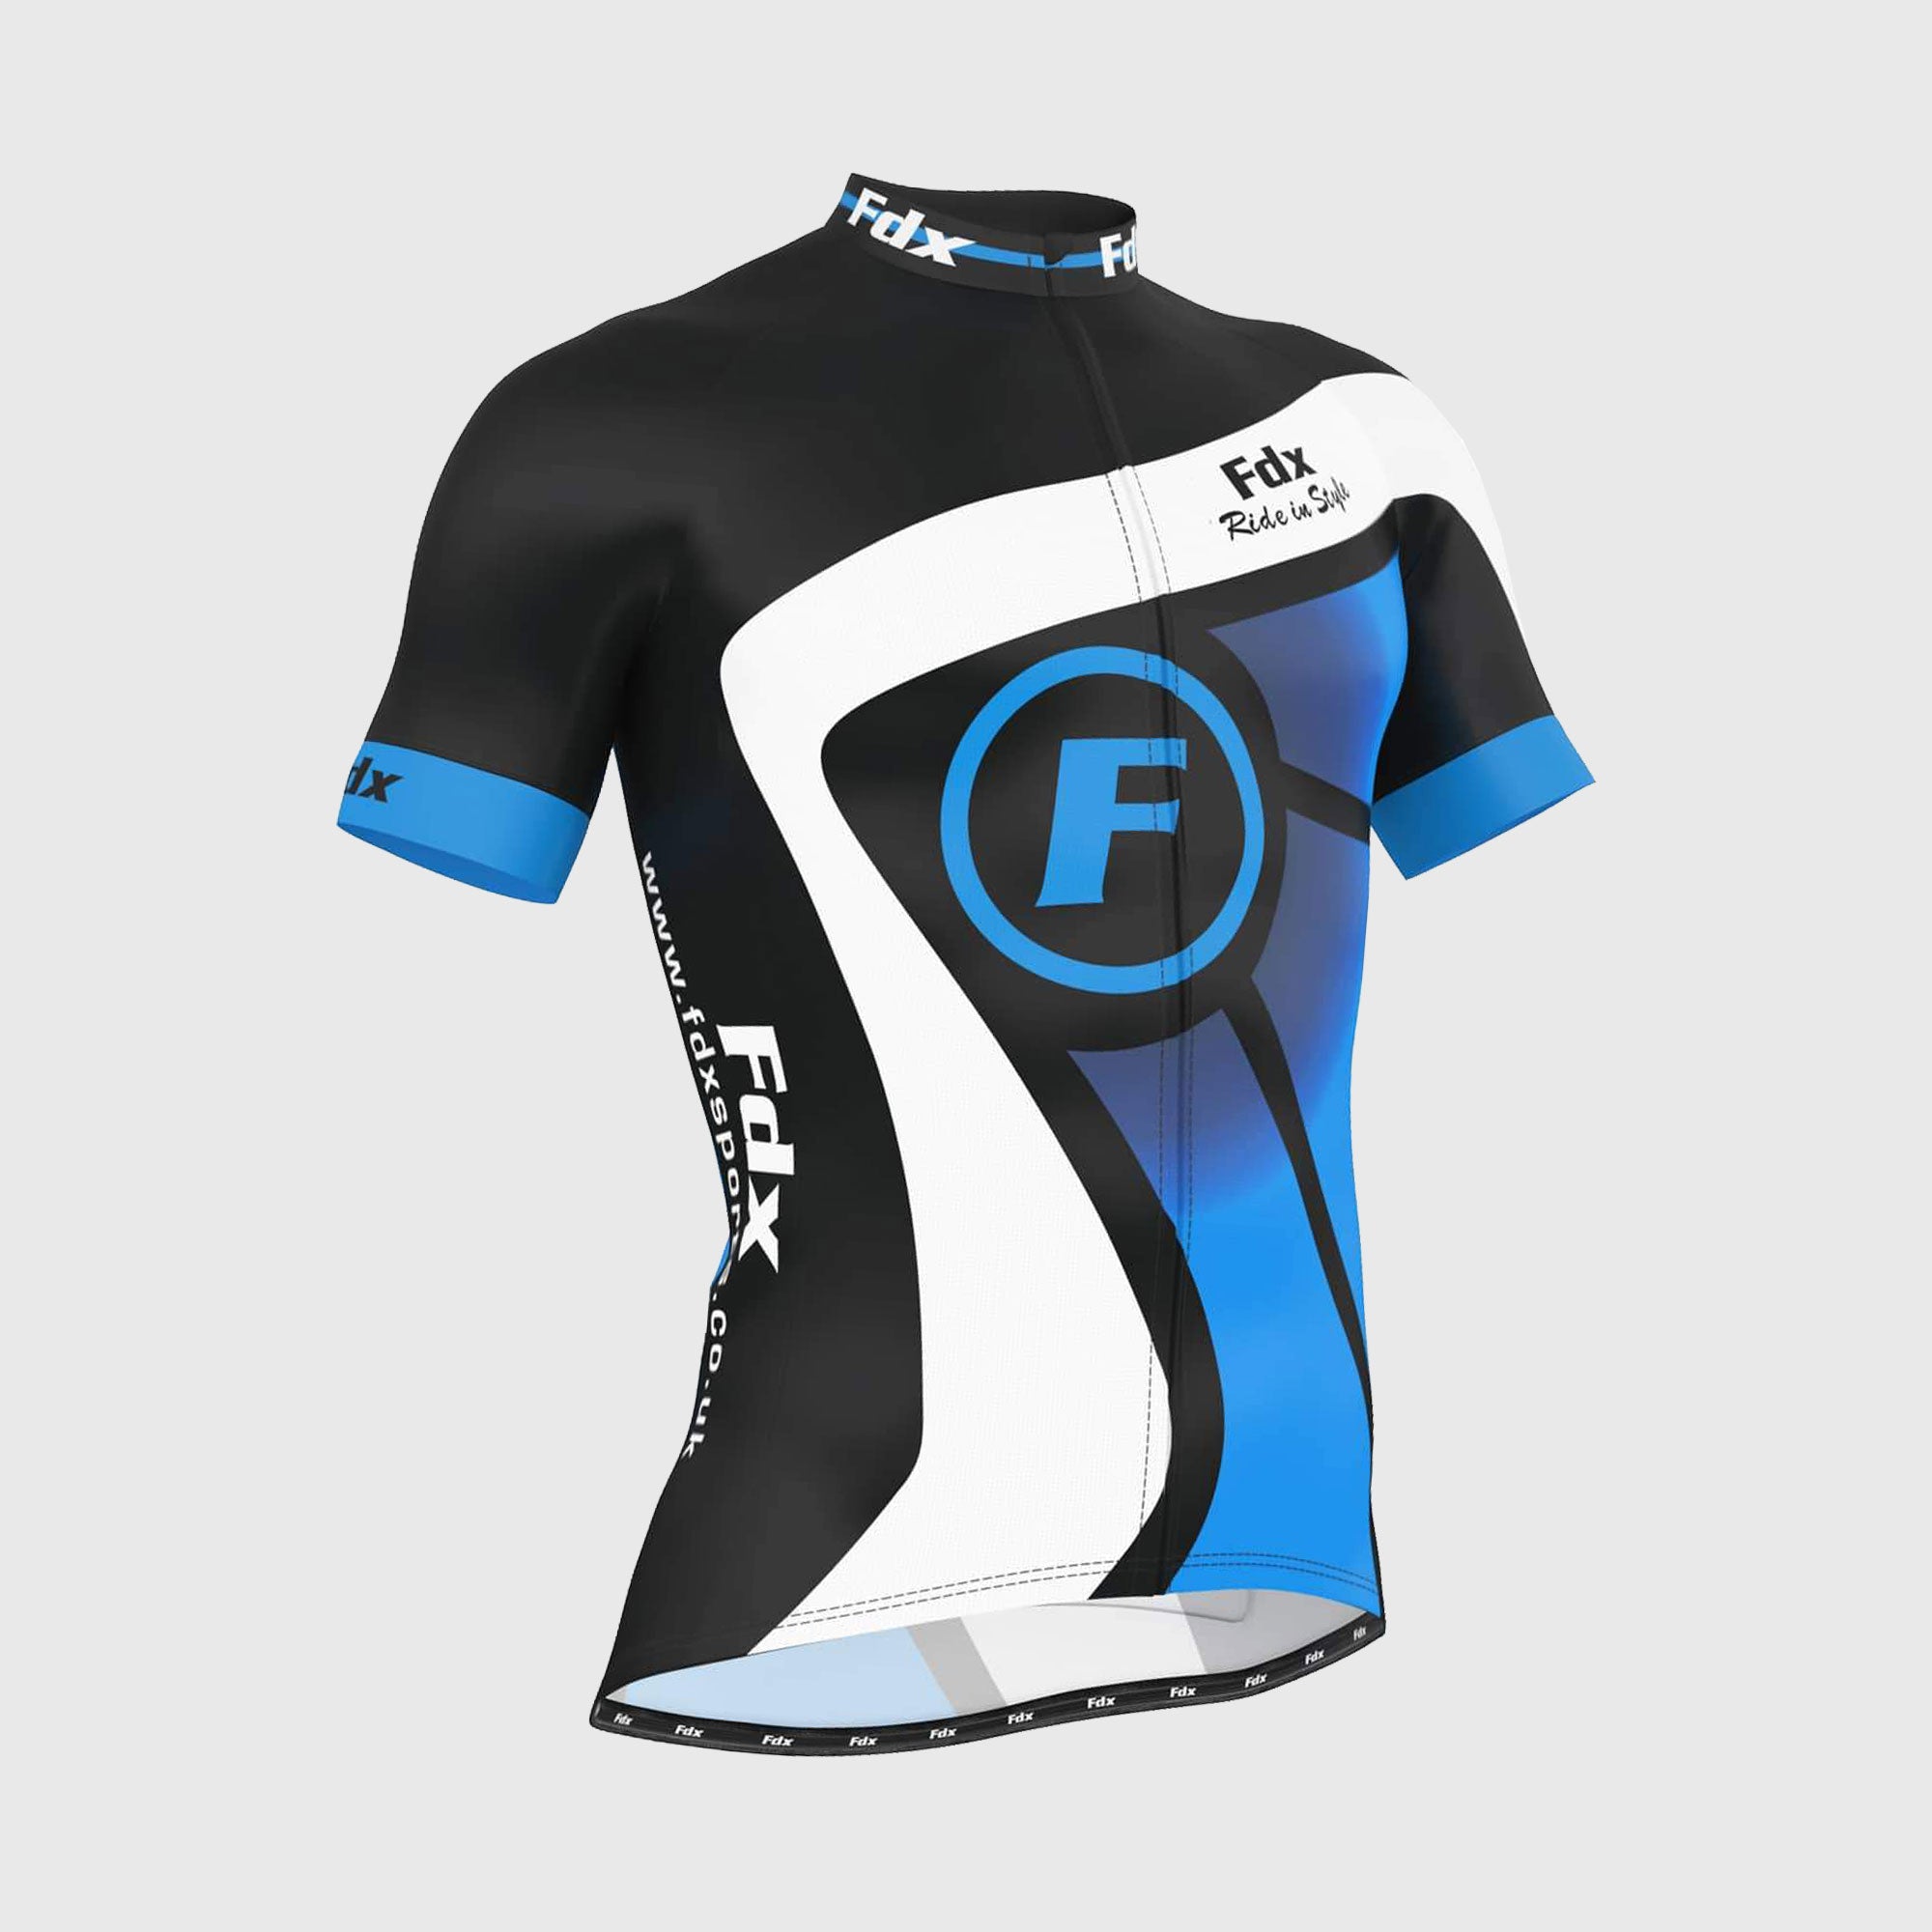 Fdx Mens Black & Blue Short Sleeve Cycling Jersey for Summer Best Road Bike Wear Top Light Weight, Full Zipper, Pockets & Hi-viz Reflectors - Signature